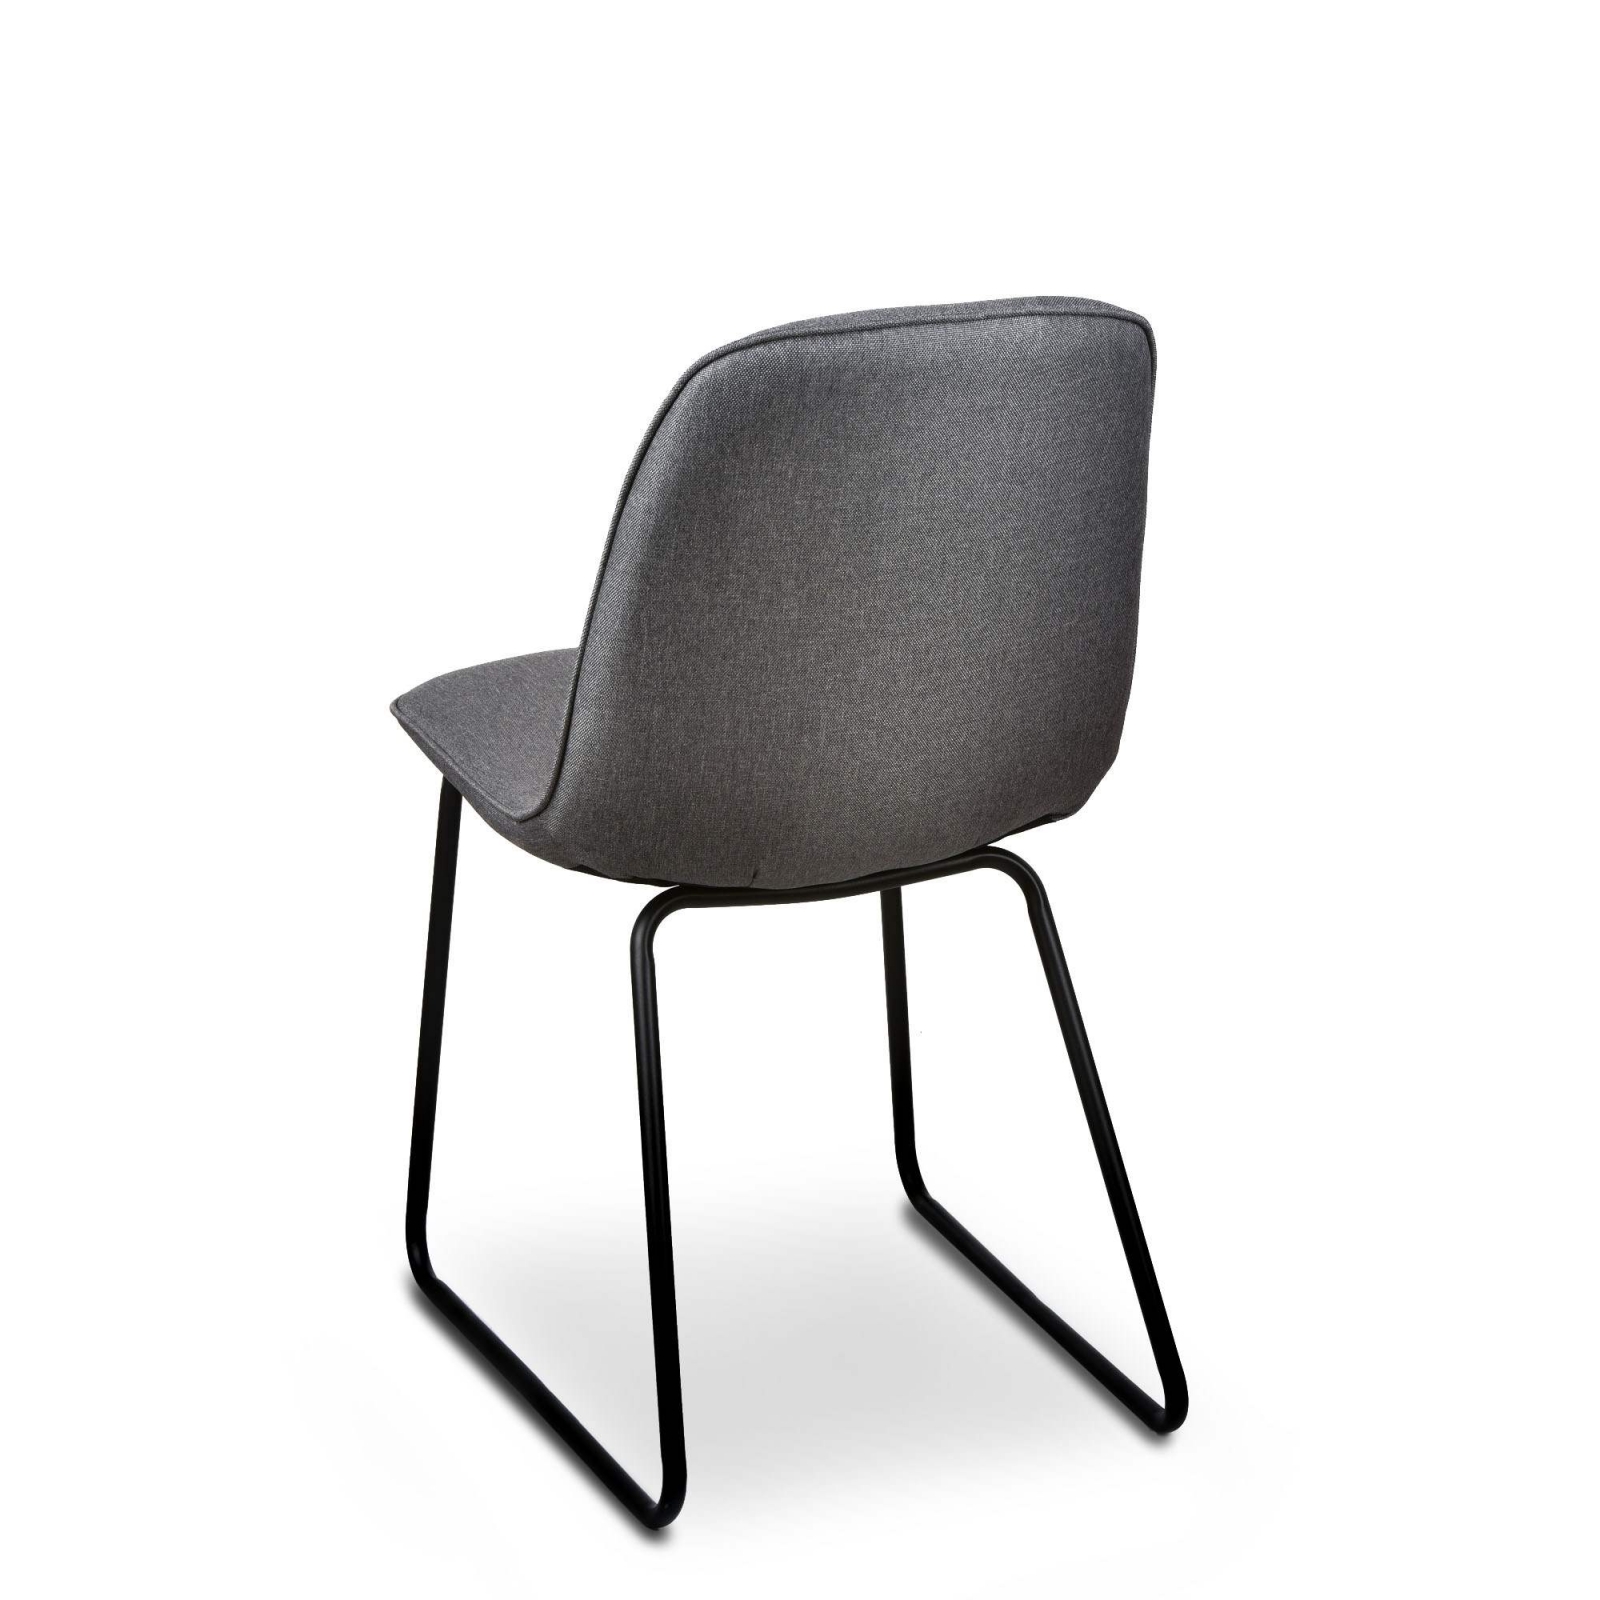 Table 180 cm + 4 chaises LINA. Table pour salle à manger brillante blanche  et noire avec 4 chaises simili cuir. Meubles design